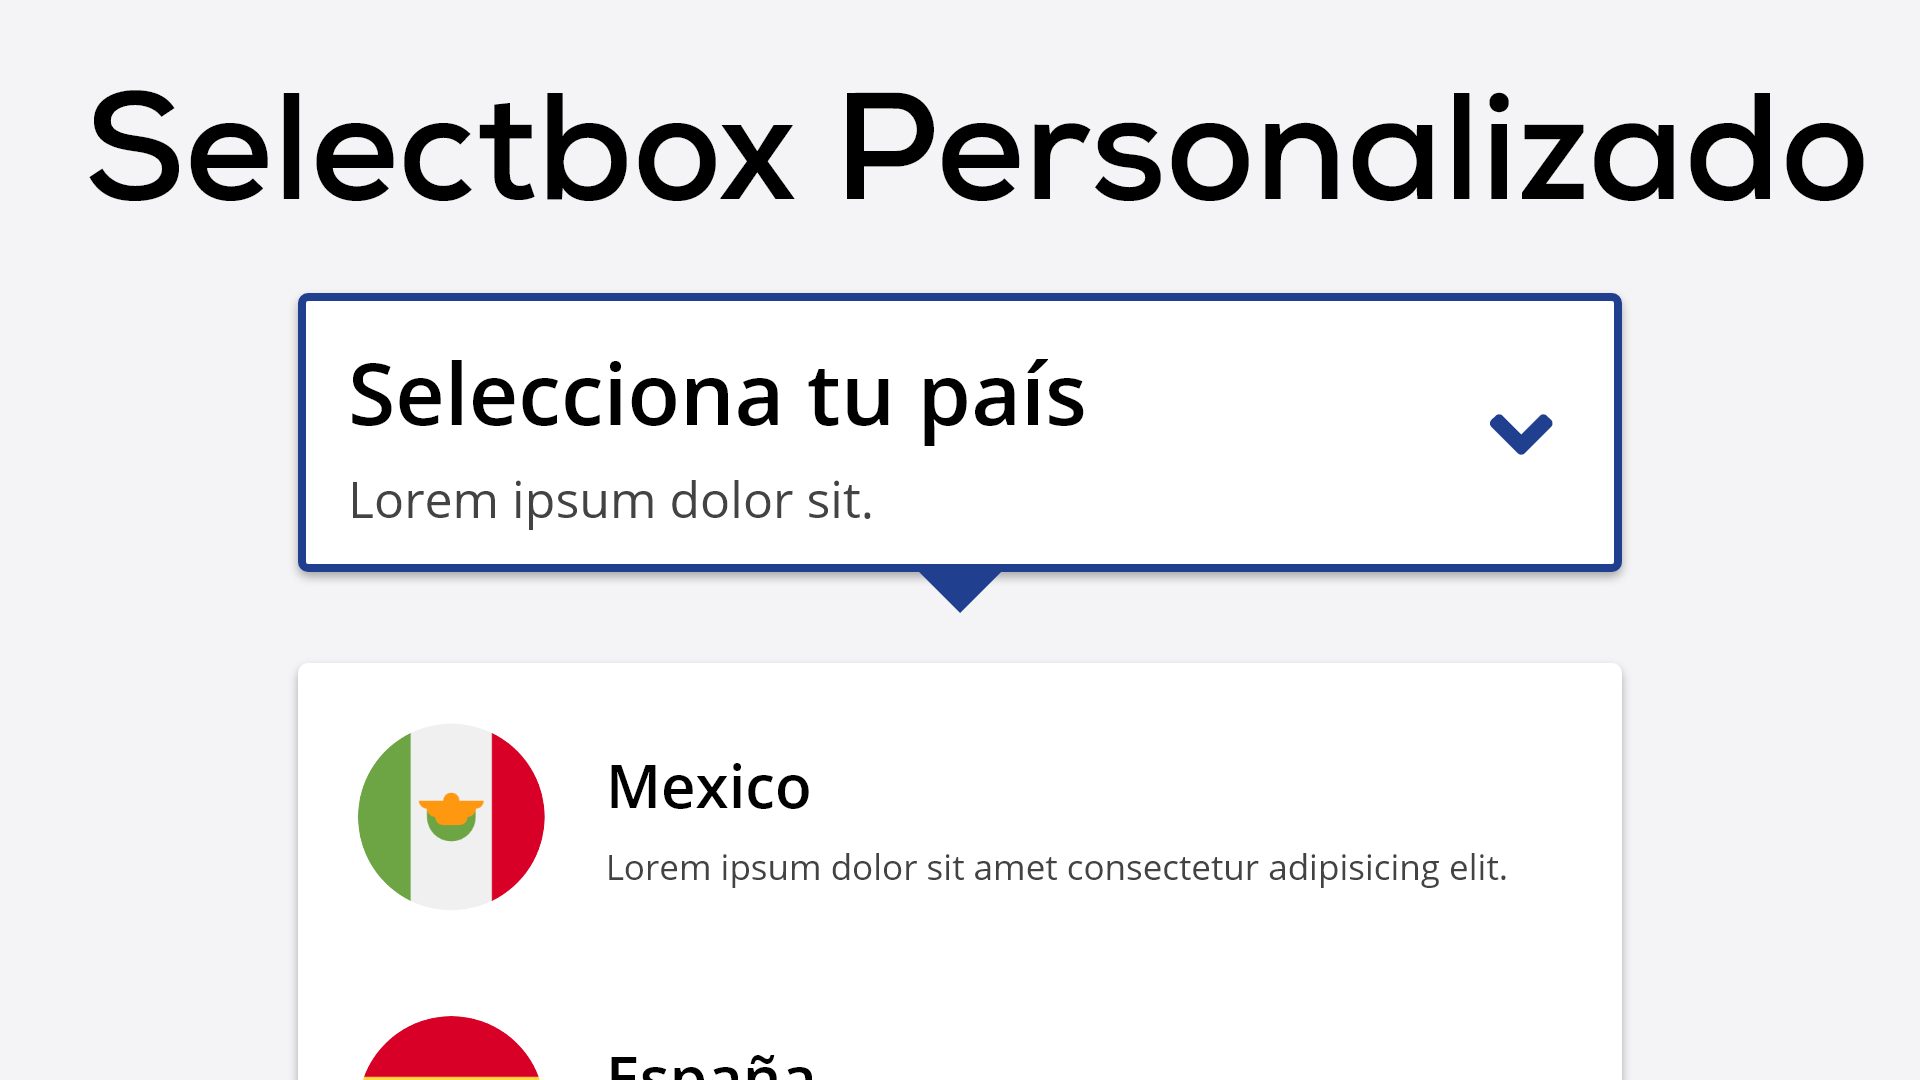 Como Hacer un Selectbox Personalizado con HTML5, CSS y Javascript Puro